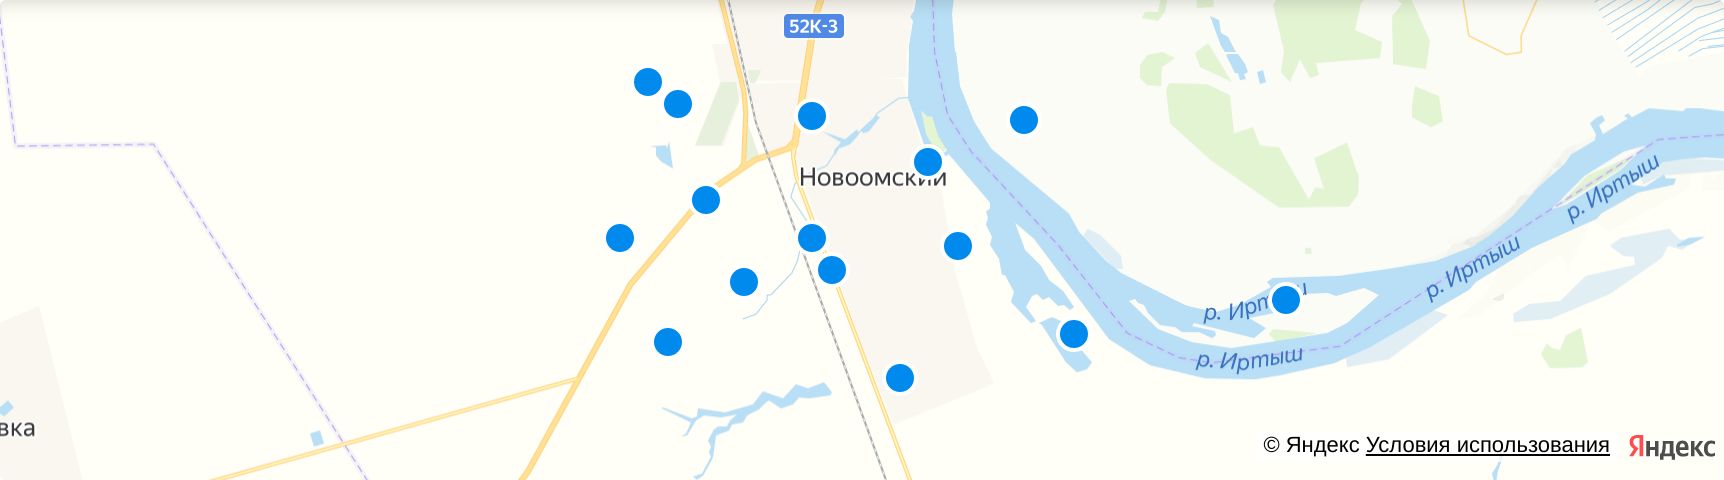 П. Новоомский на карте. Новоомское сельское поселение Омского района.